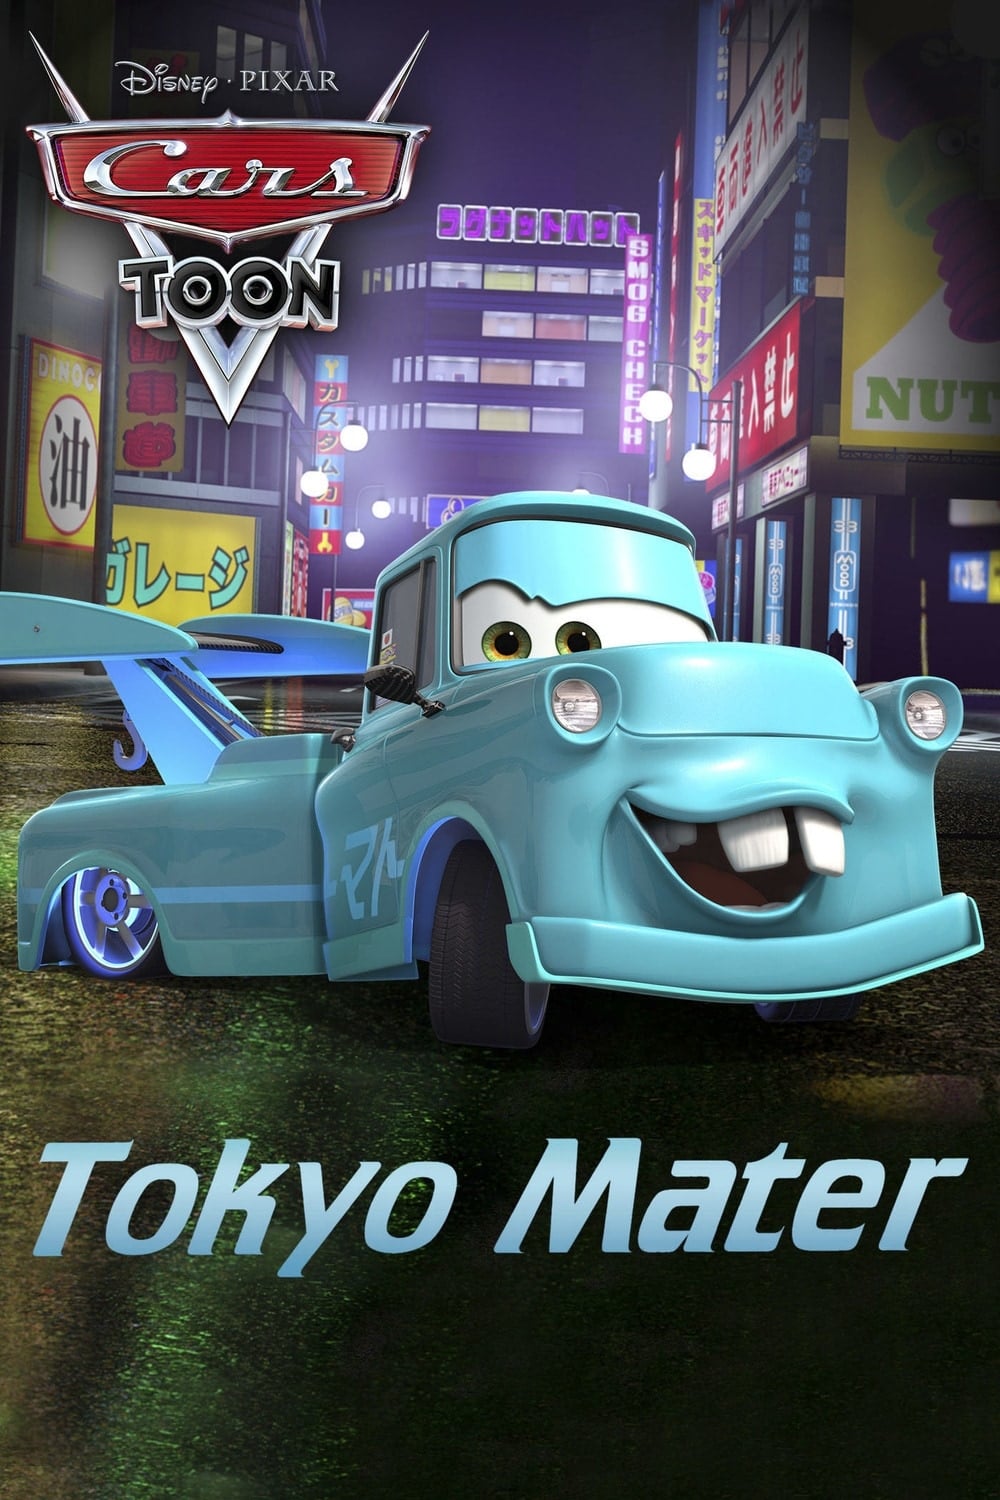 Tokyo Mater